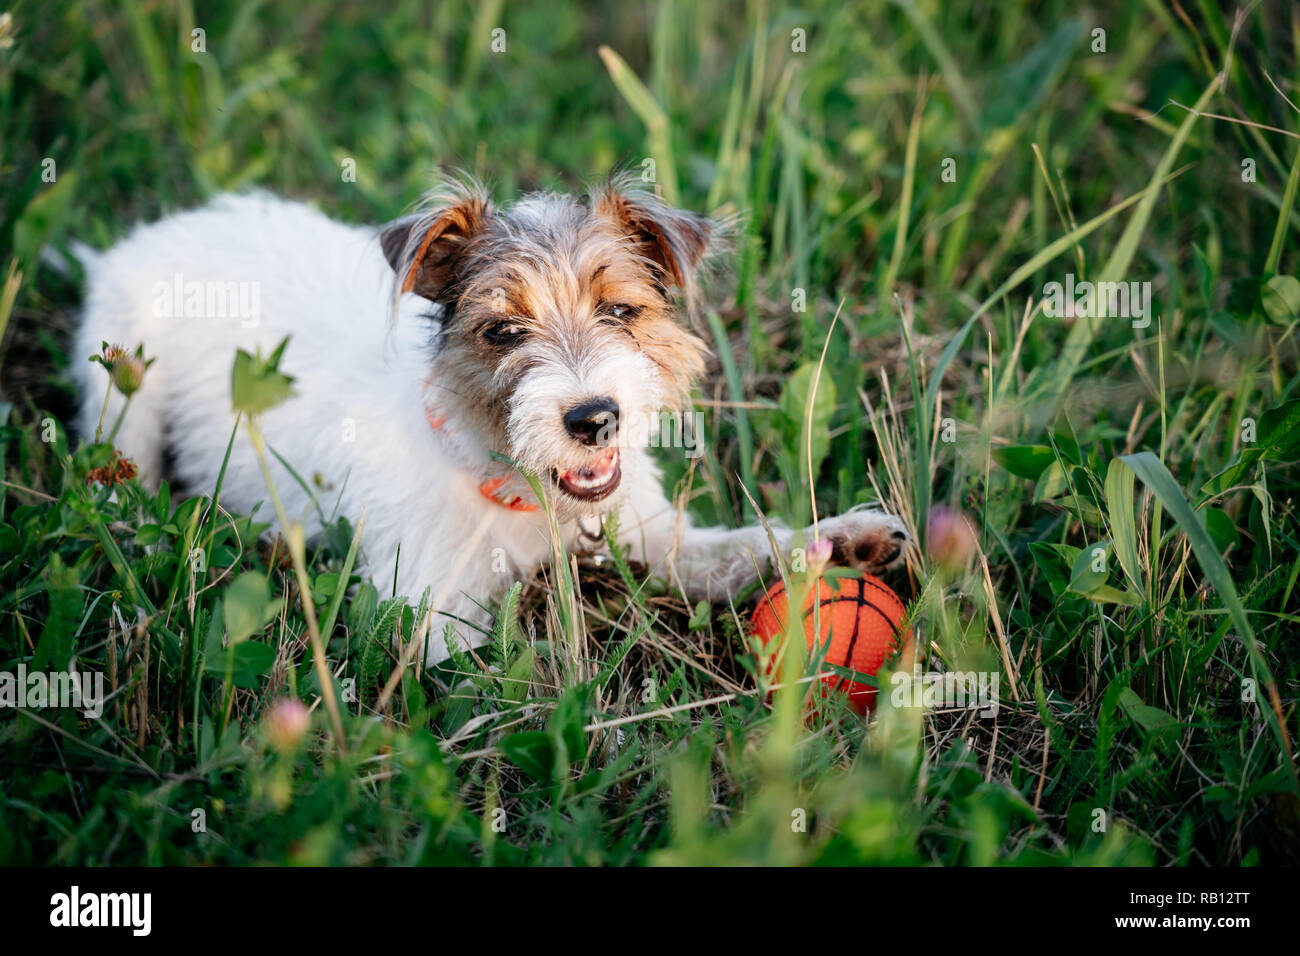 Jack Russell Terrier cucciolo di cane con capelli lunghi giocare a sfera arancione in erba verde Foto Stock